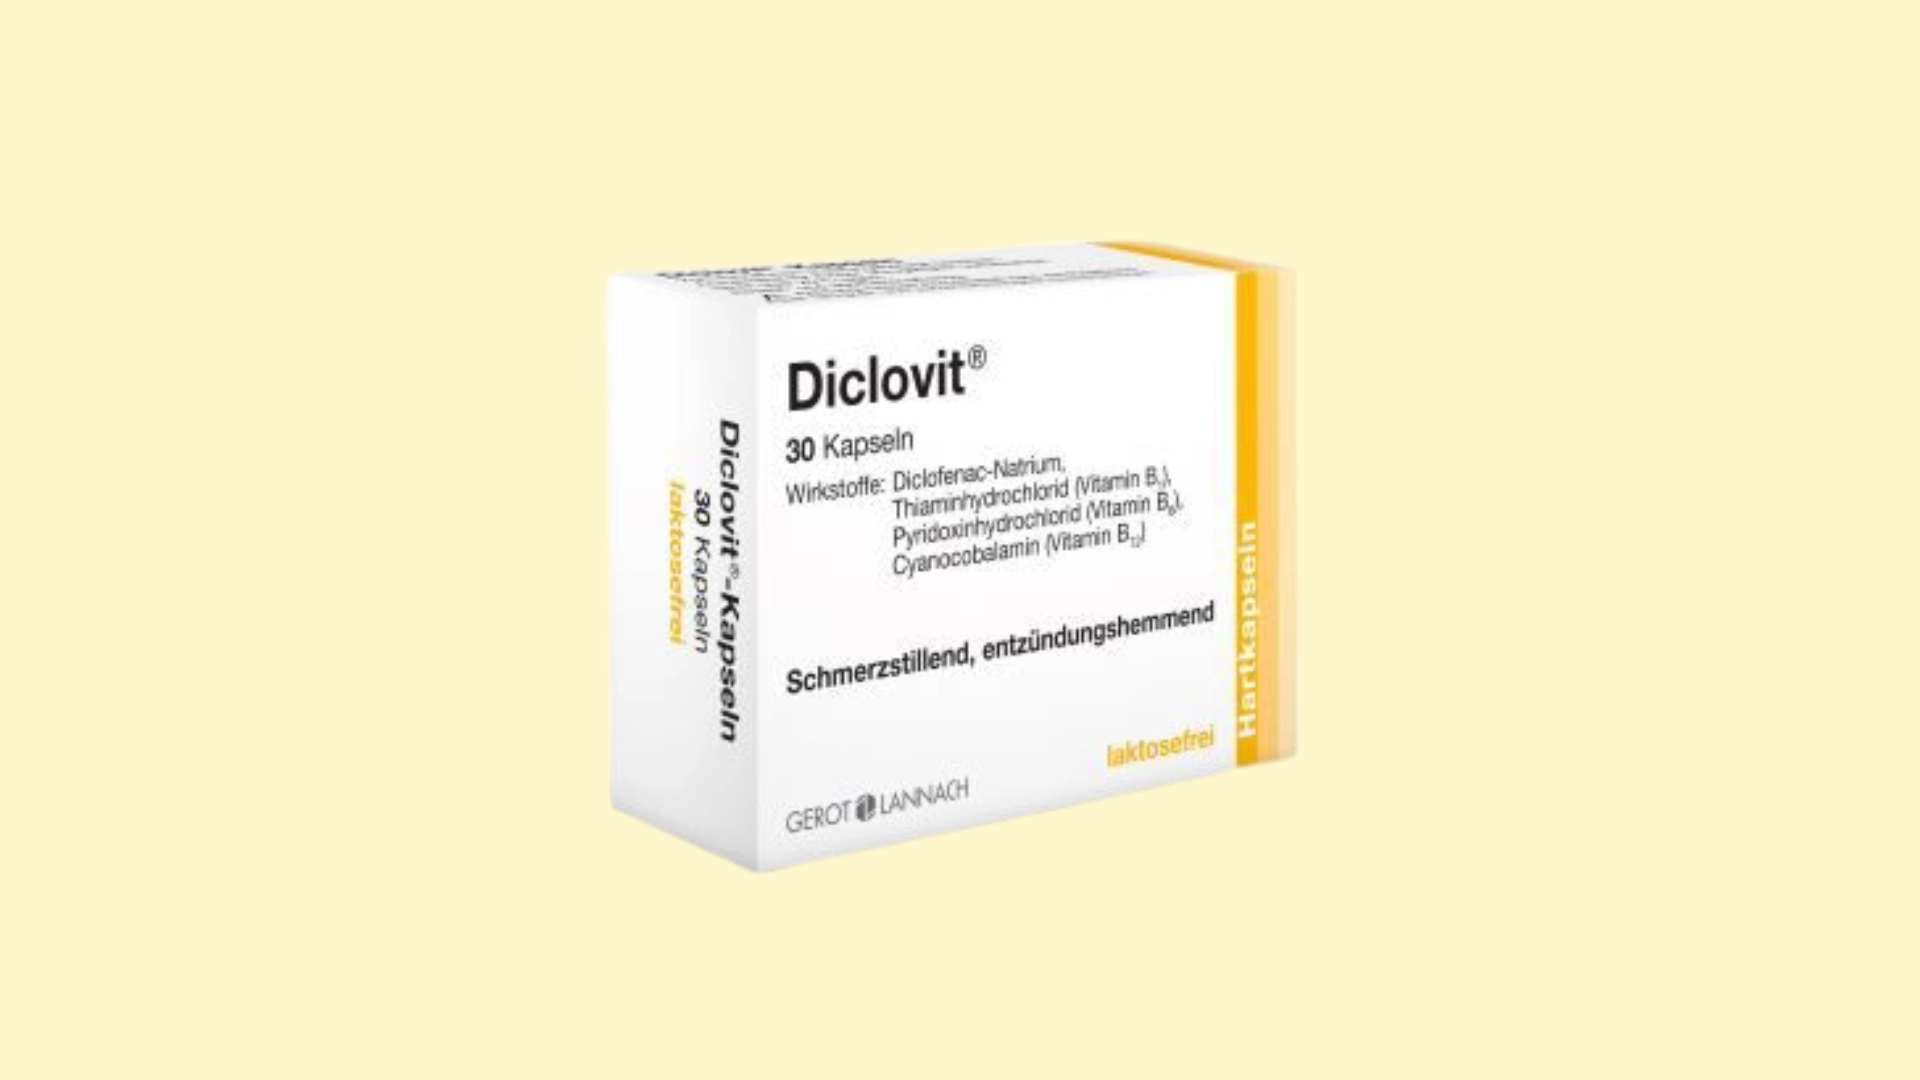 Diclovit E recepta  recepta online z konsultacją | cena  dawkowanie  przeciwwskazania